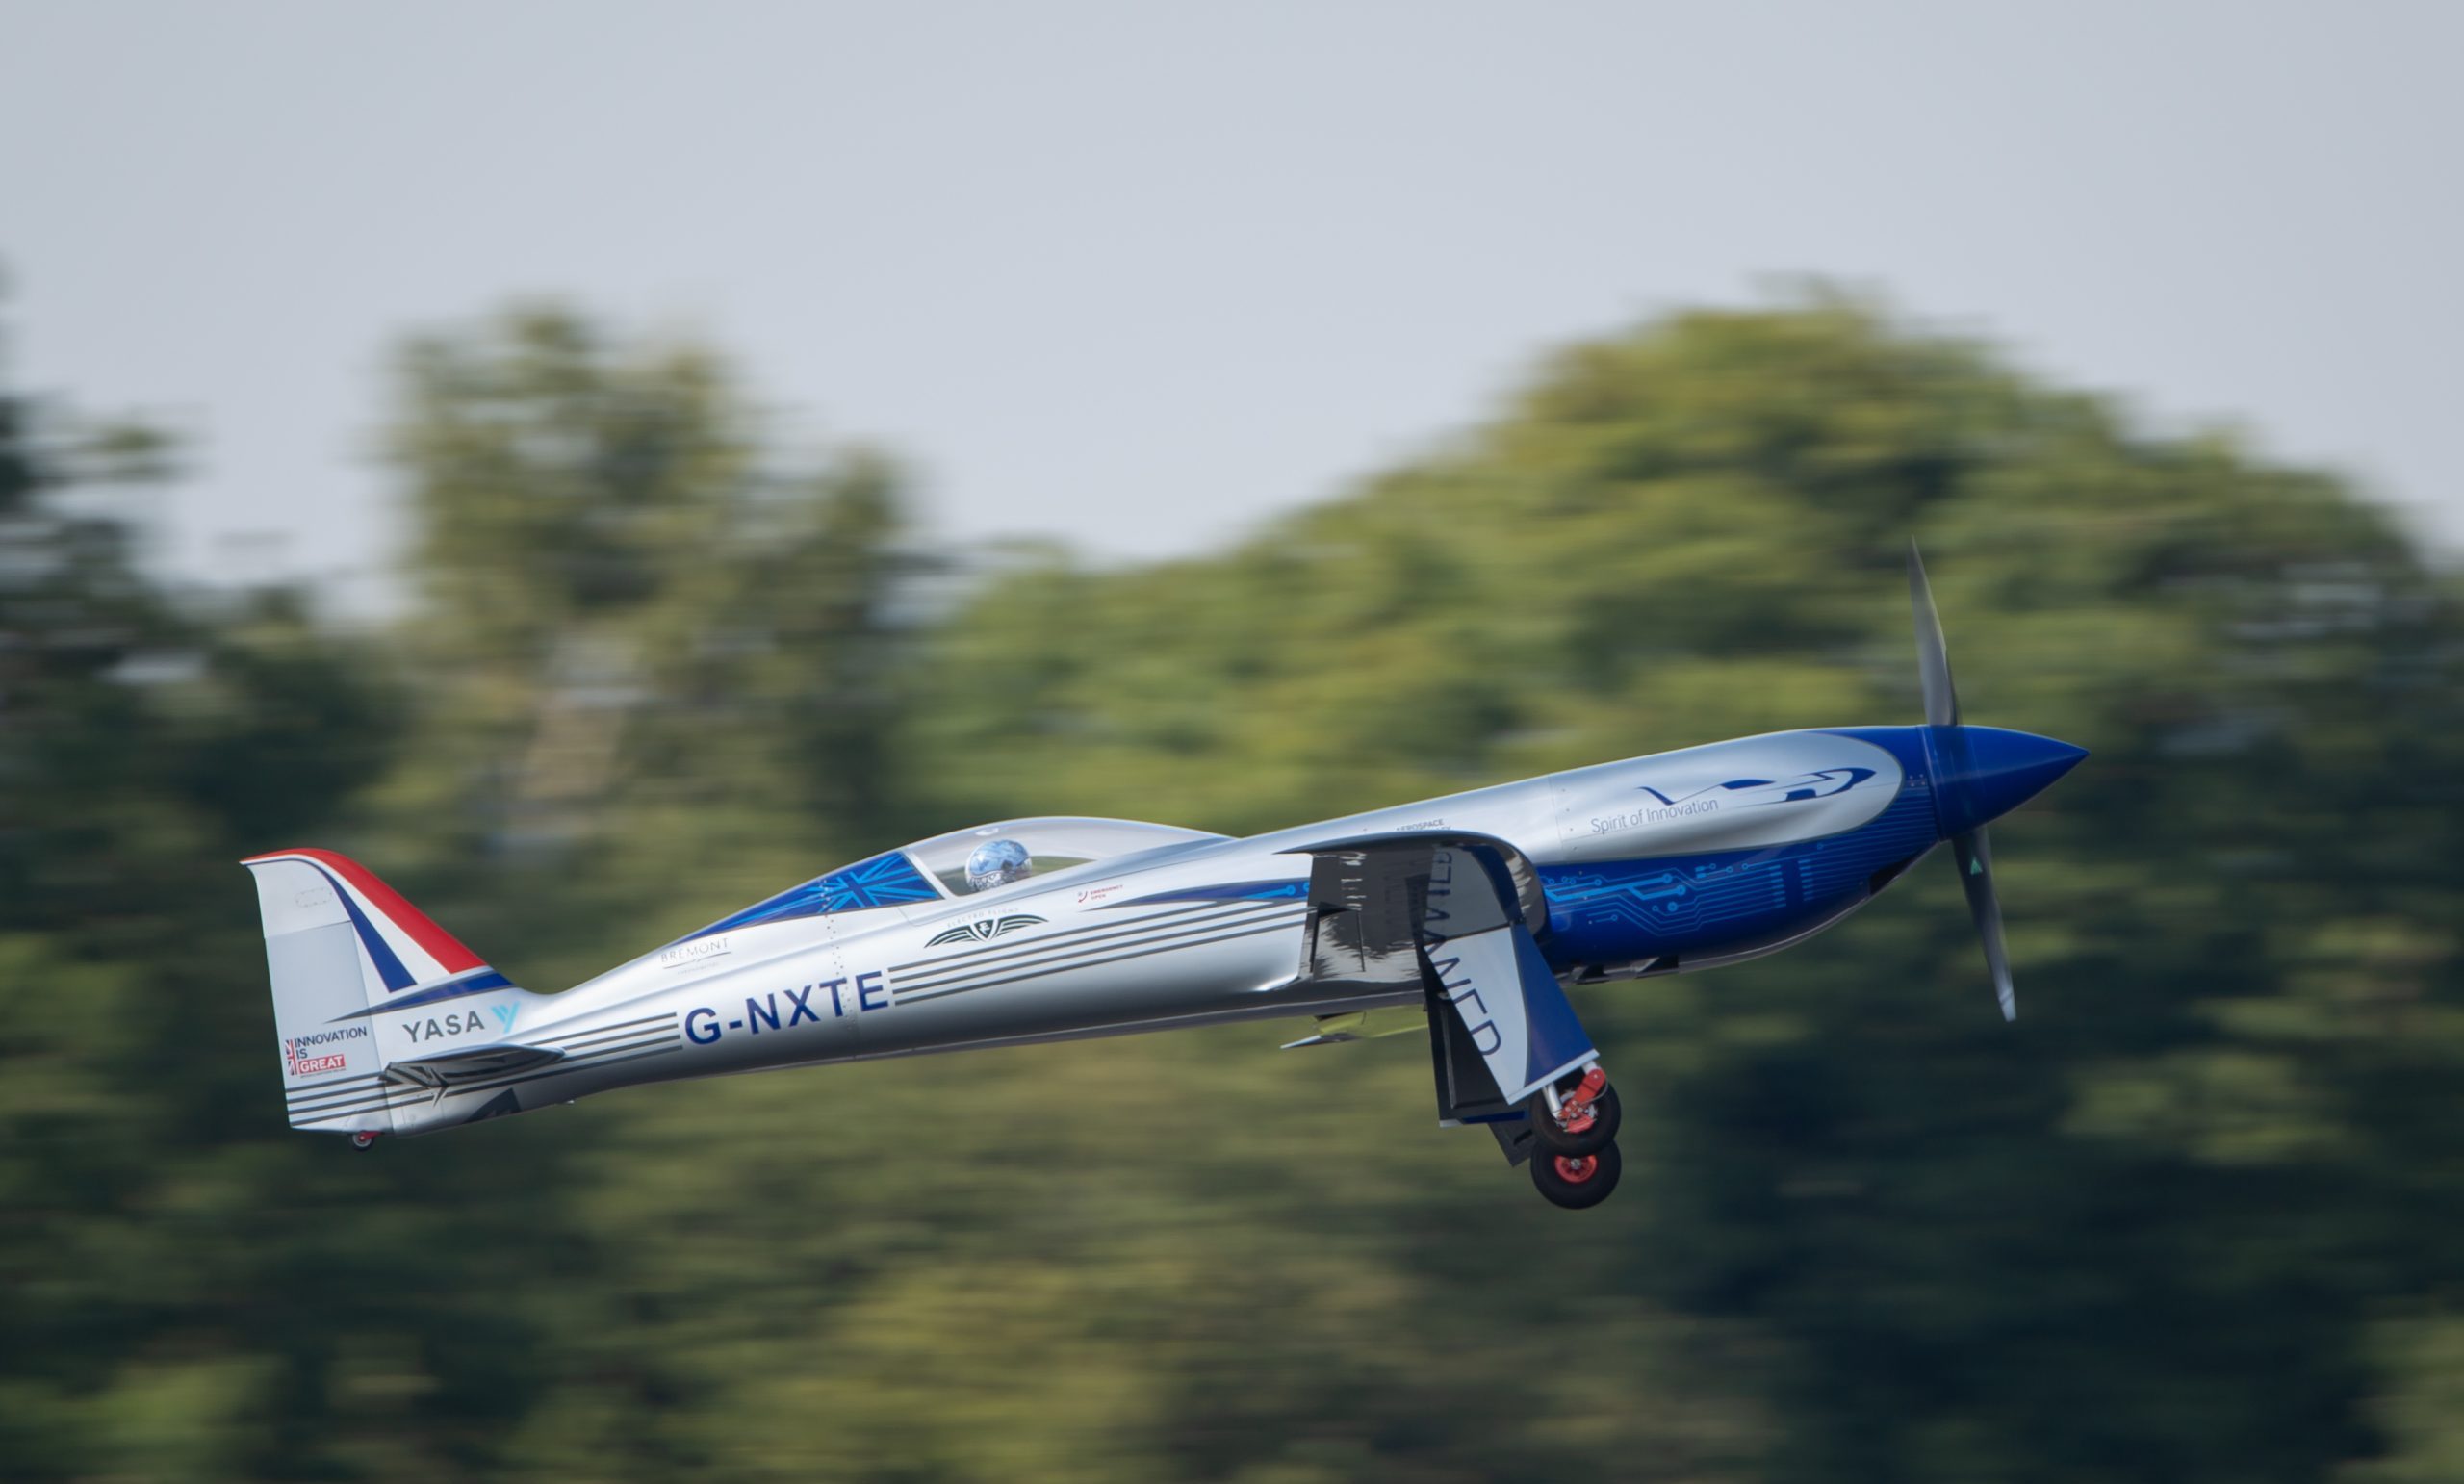 Rolls-Royce’un tamamen elektrikli “Spirit of Innovation” uçağı ilk kez gökyüzüyle buluştu